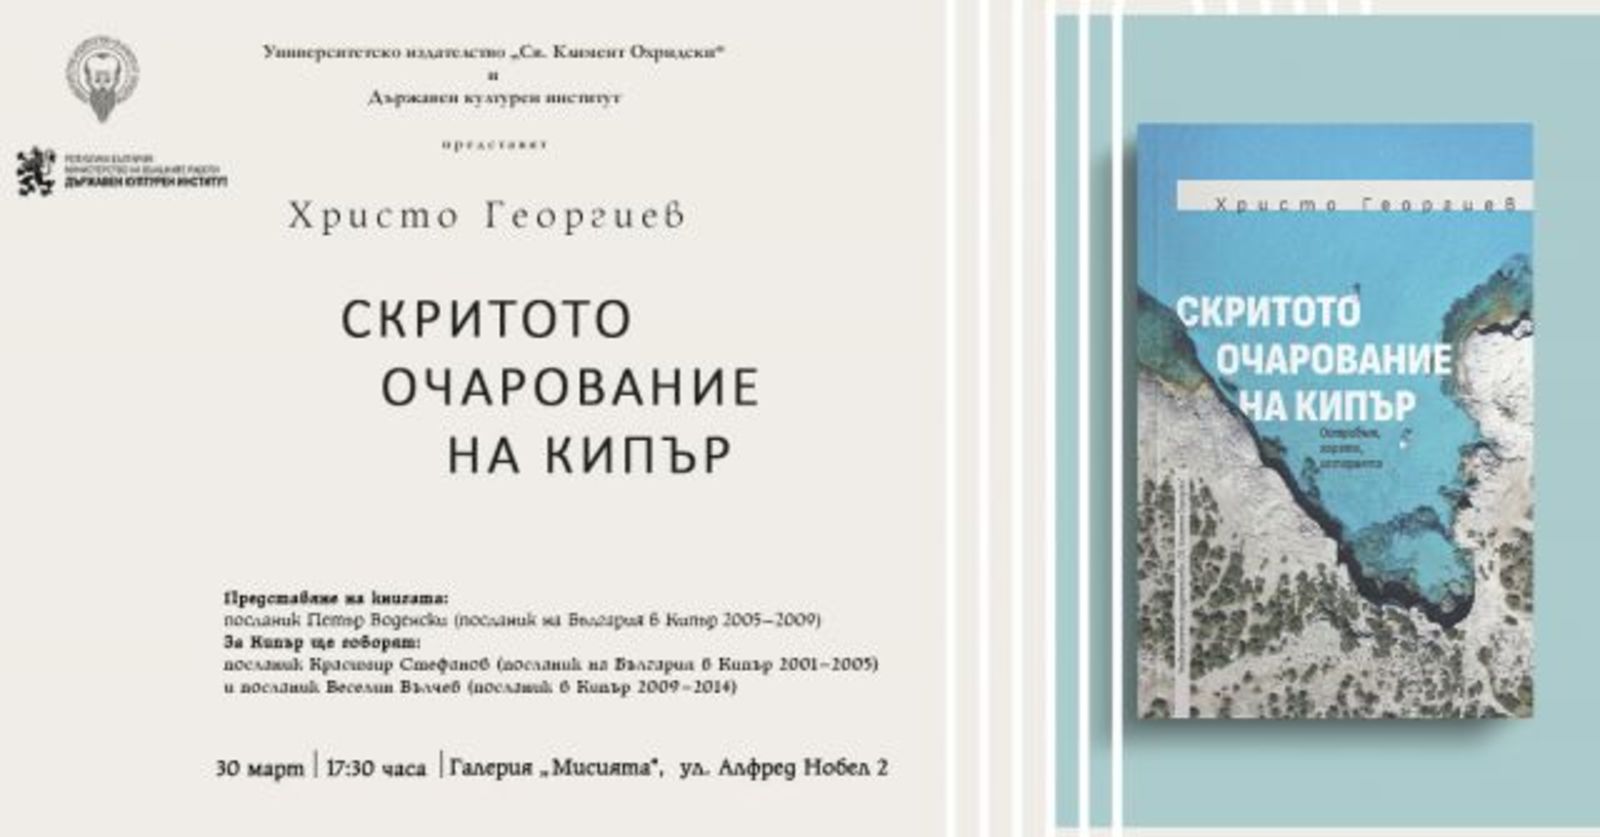 Премиера на книгата "Скритото очарование на Кипър" от Христо Георгиев